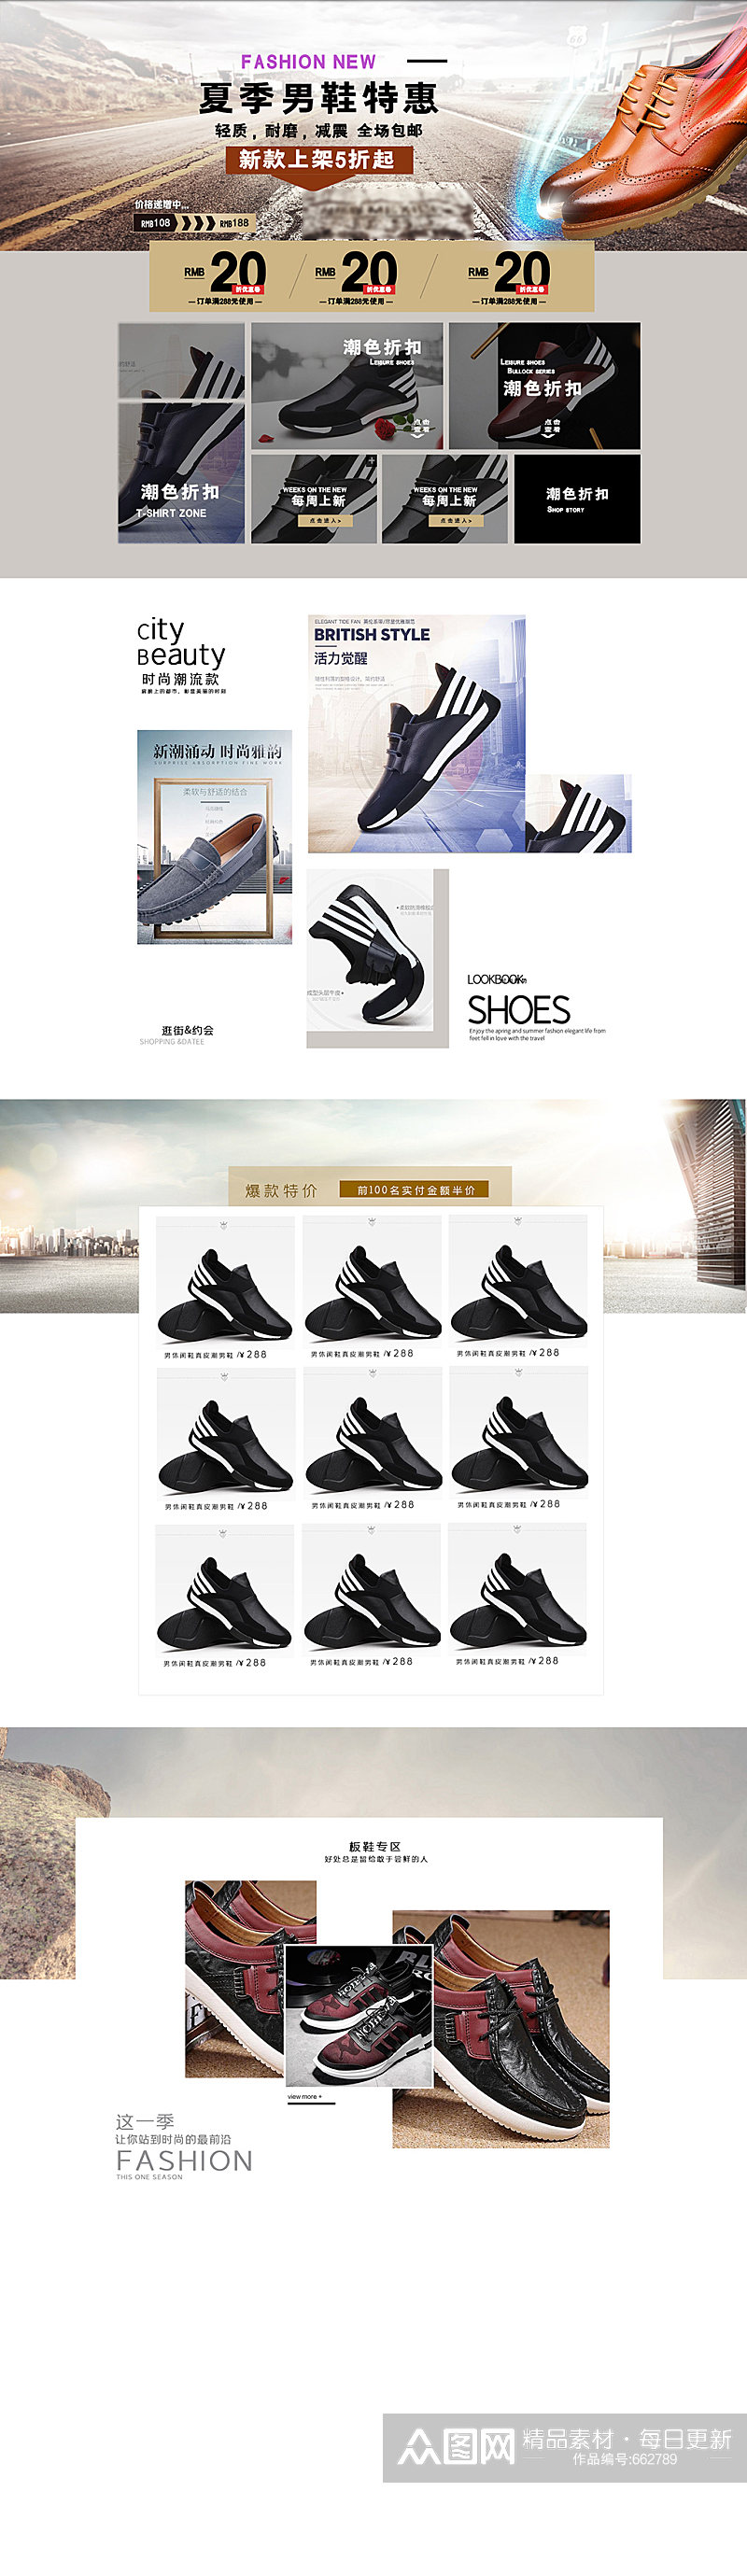 鞋子促销活动首页设计素材